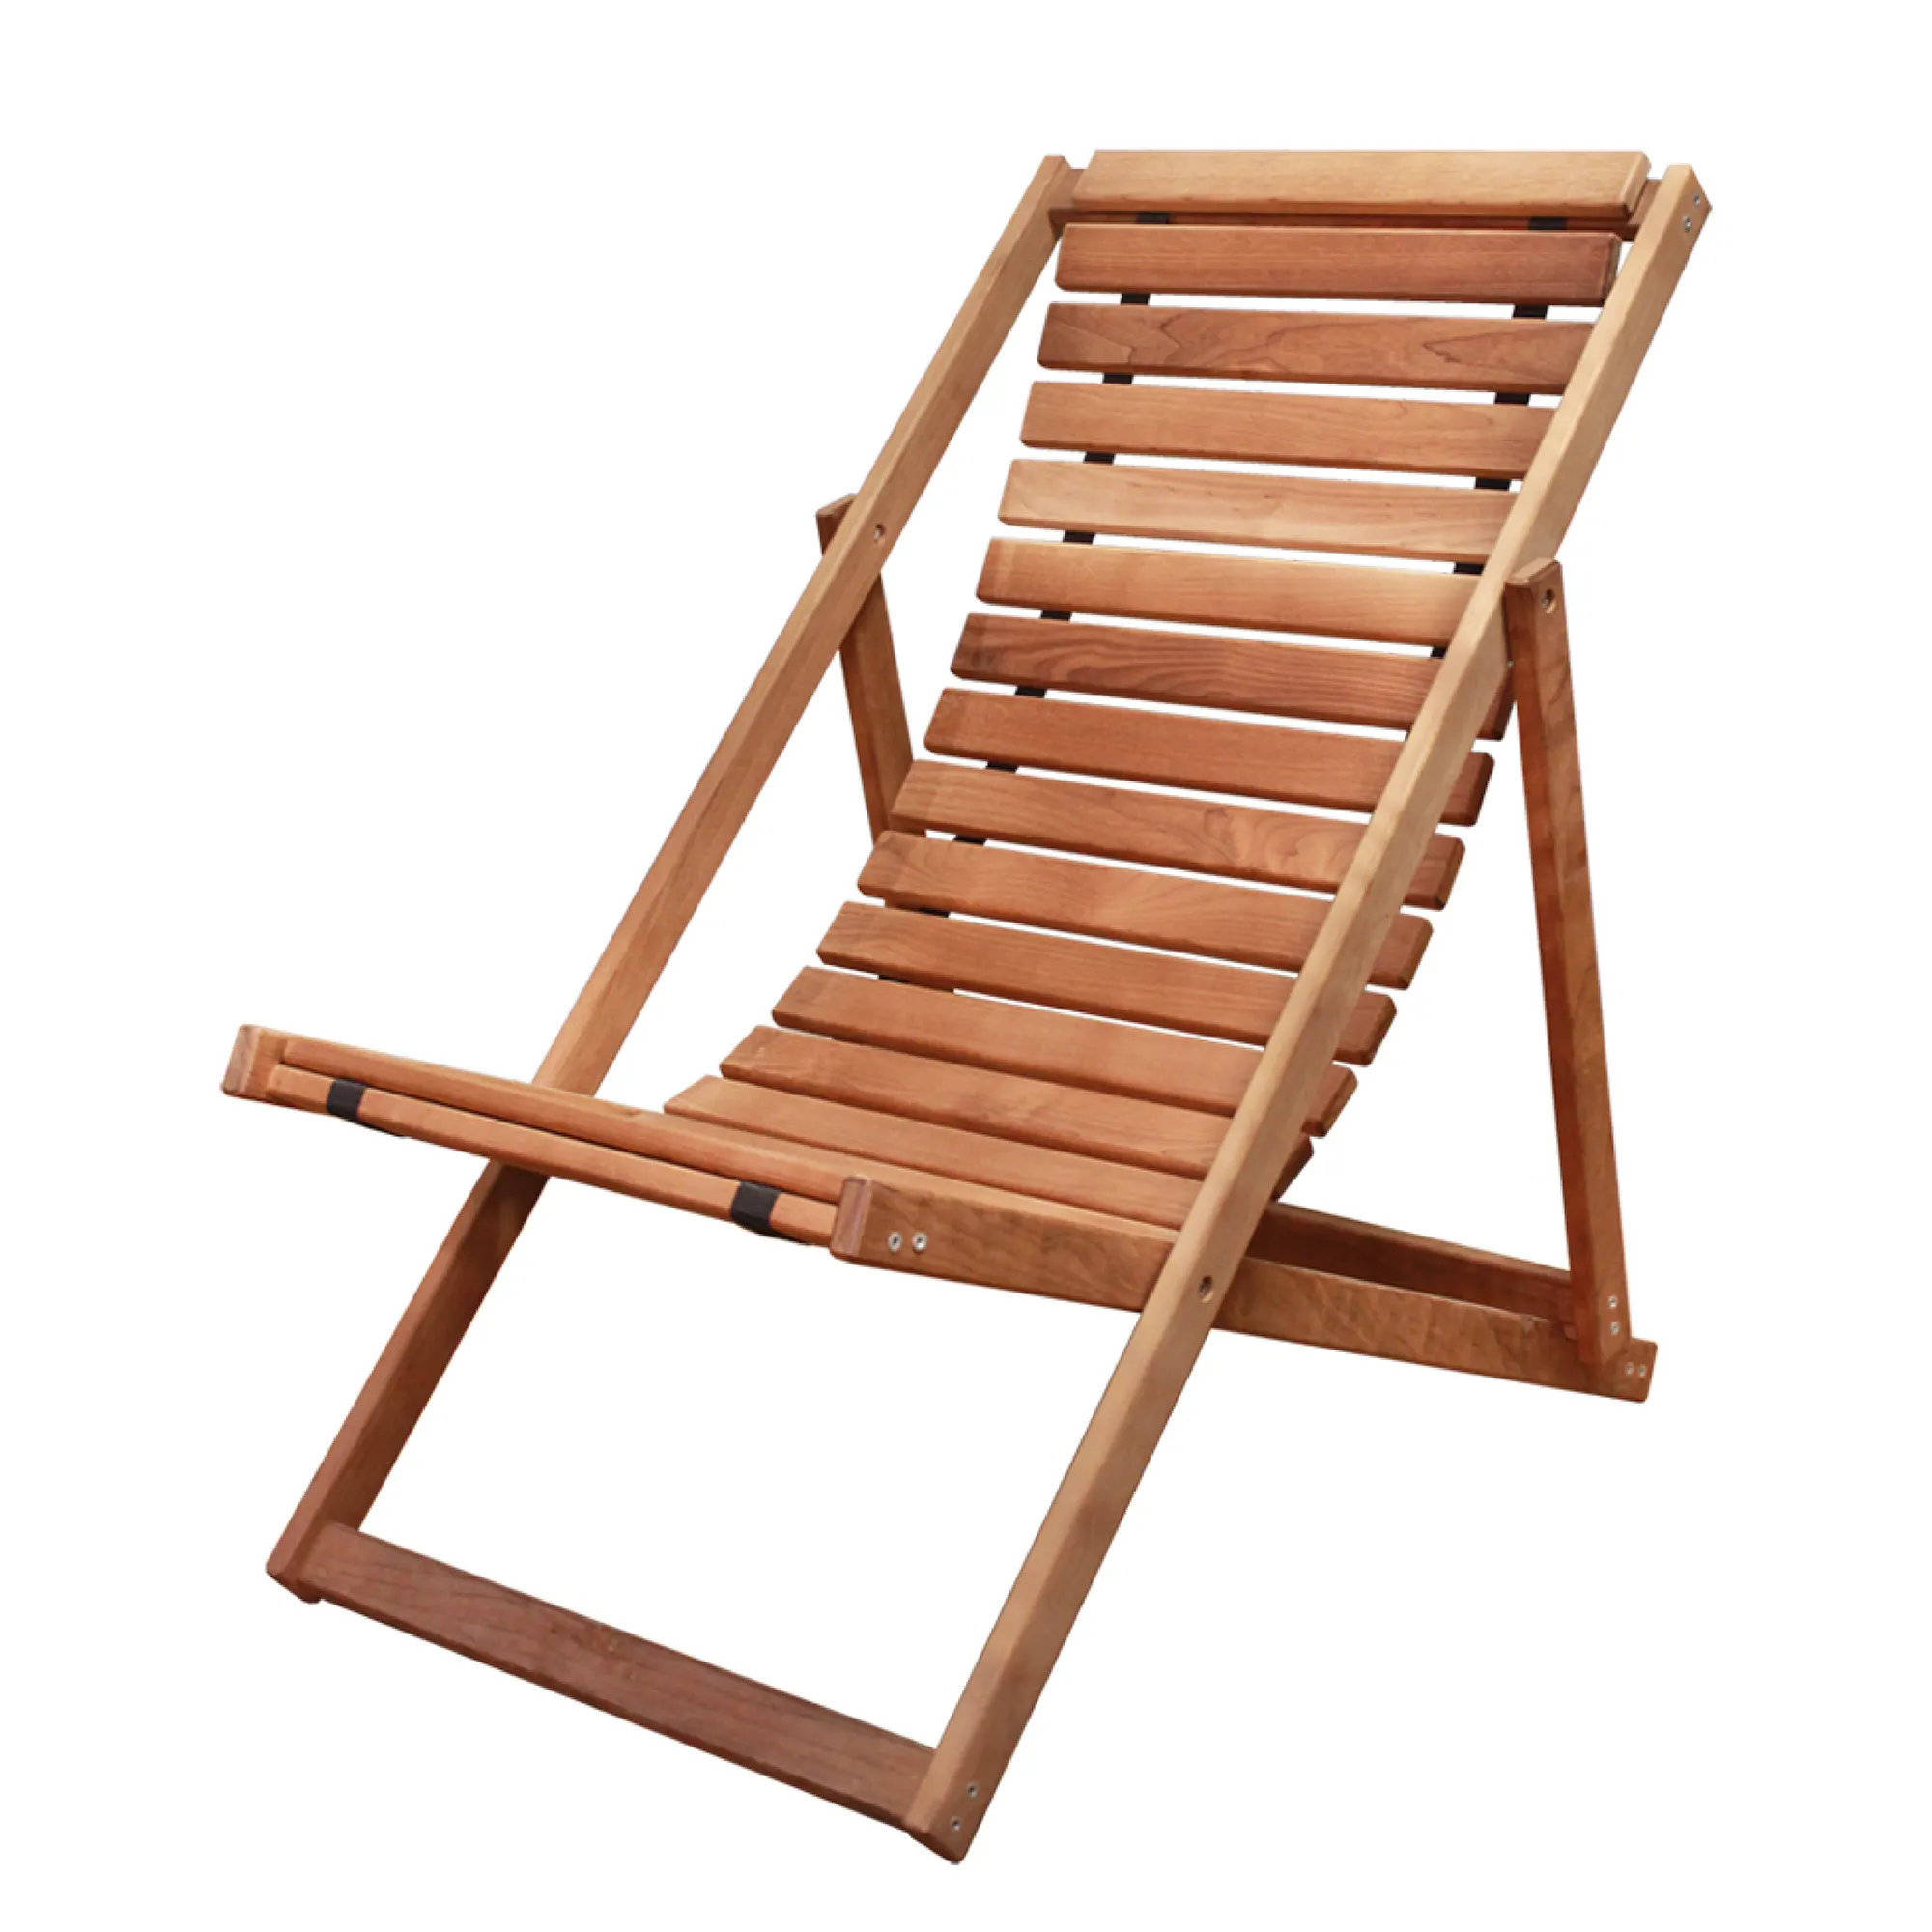 スイミングプール、サウナ、屋外用の耐熱バーチ/耐湿性木製寝椅子で作られた無垢材の折りたたみ式サンラウンジャー